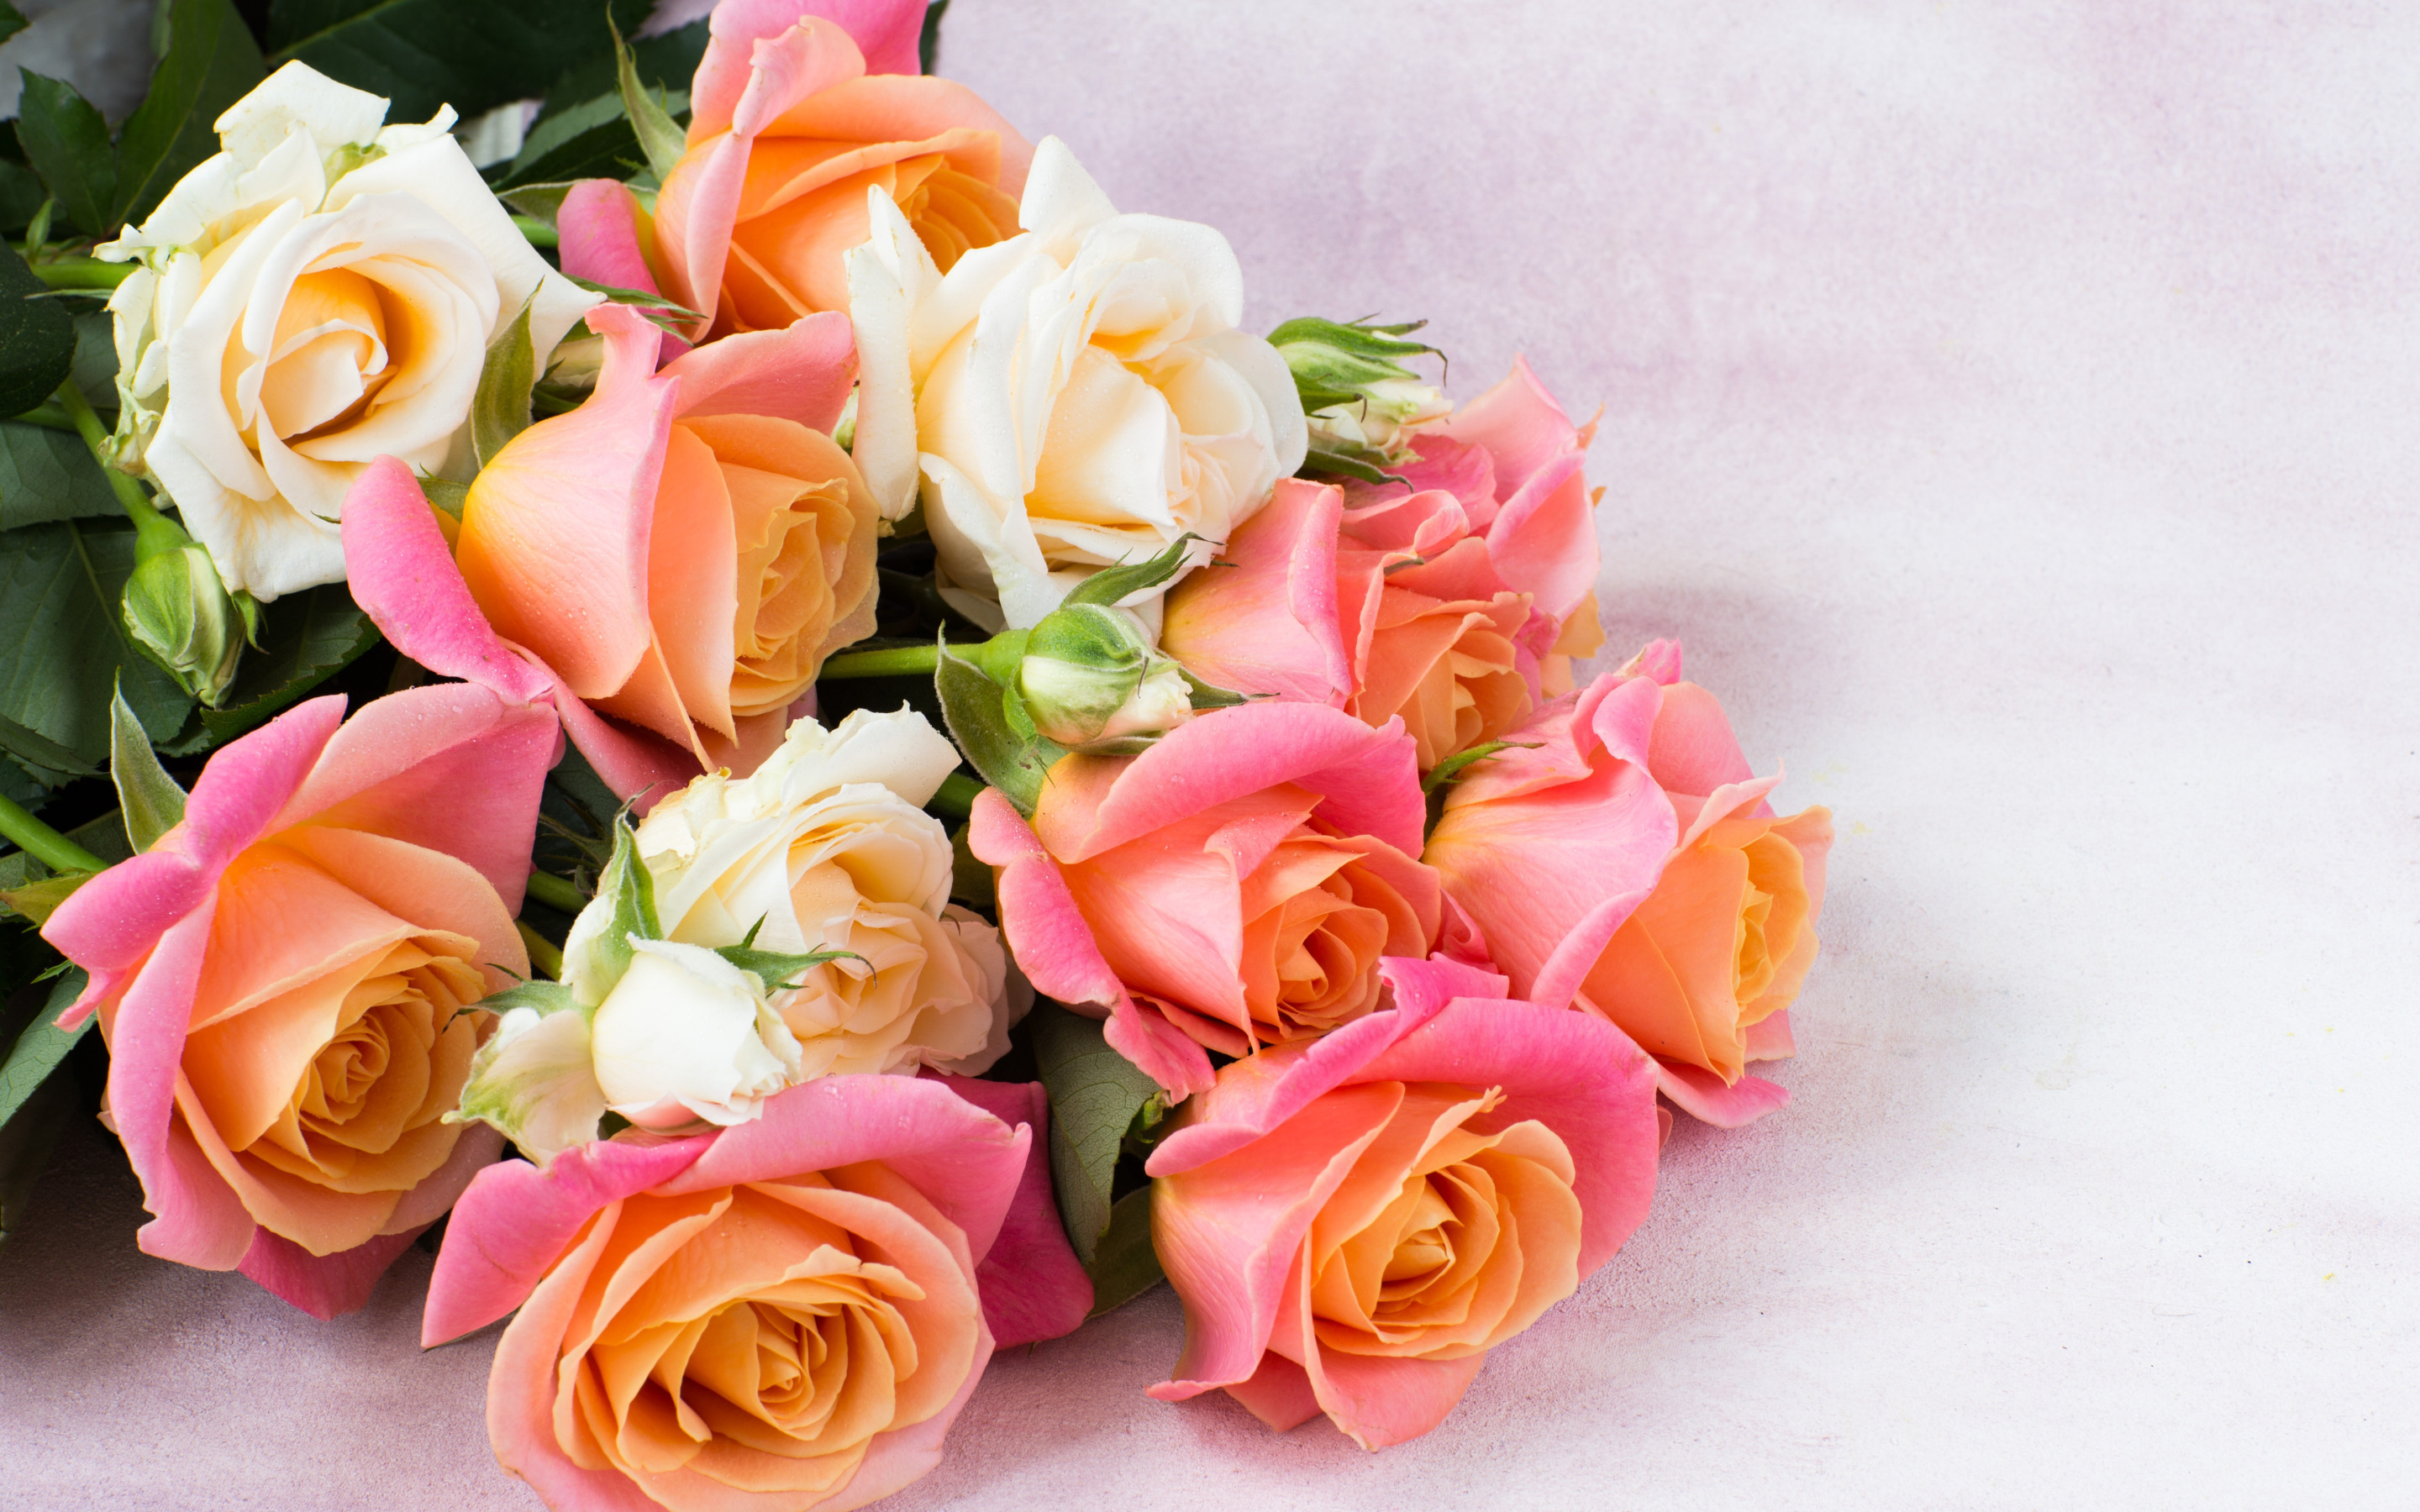 Леночка с днем рождения поздравления своими словами. С днем рождения. С днём рождения Леночка. Букет роз с днем рождения. Поздравляем с днем рождения цветы.